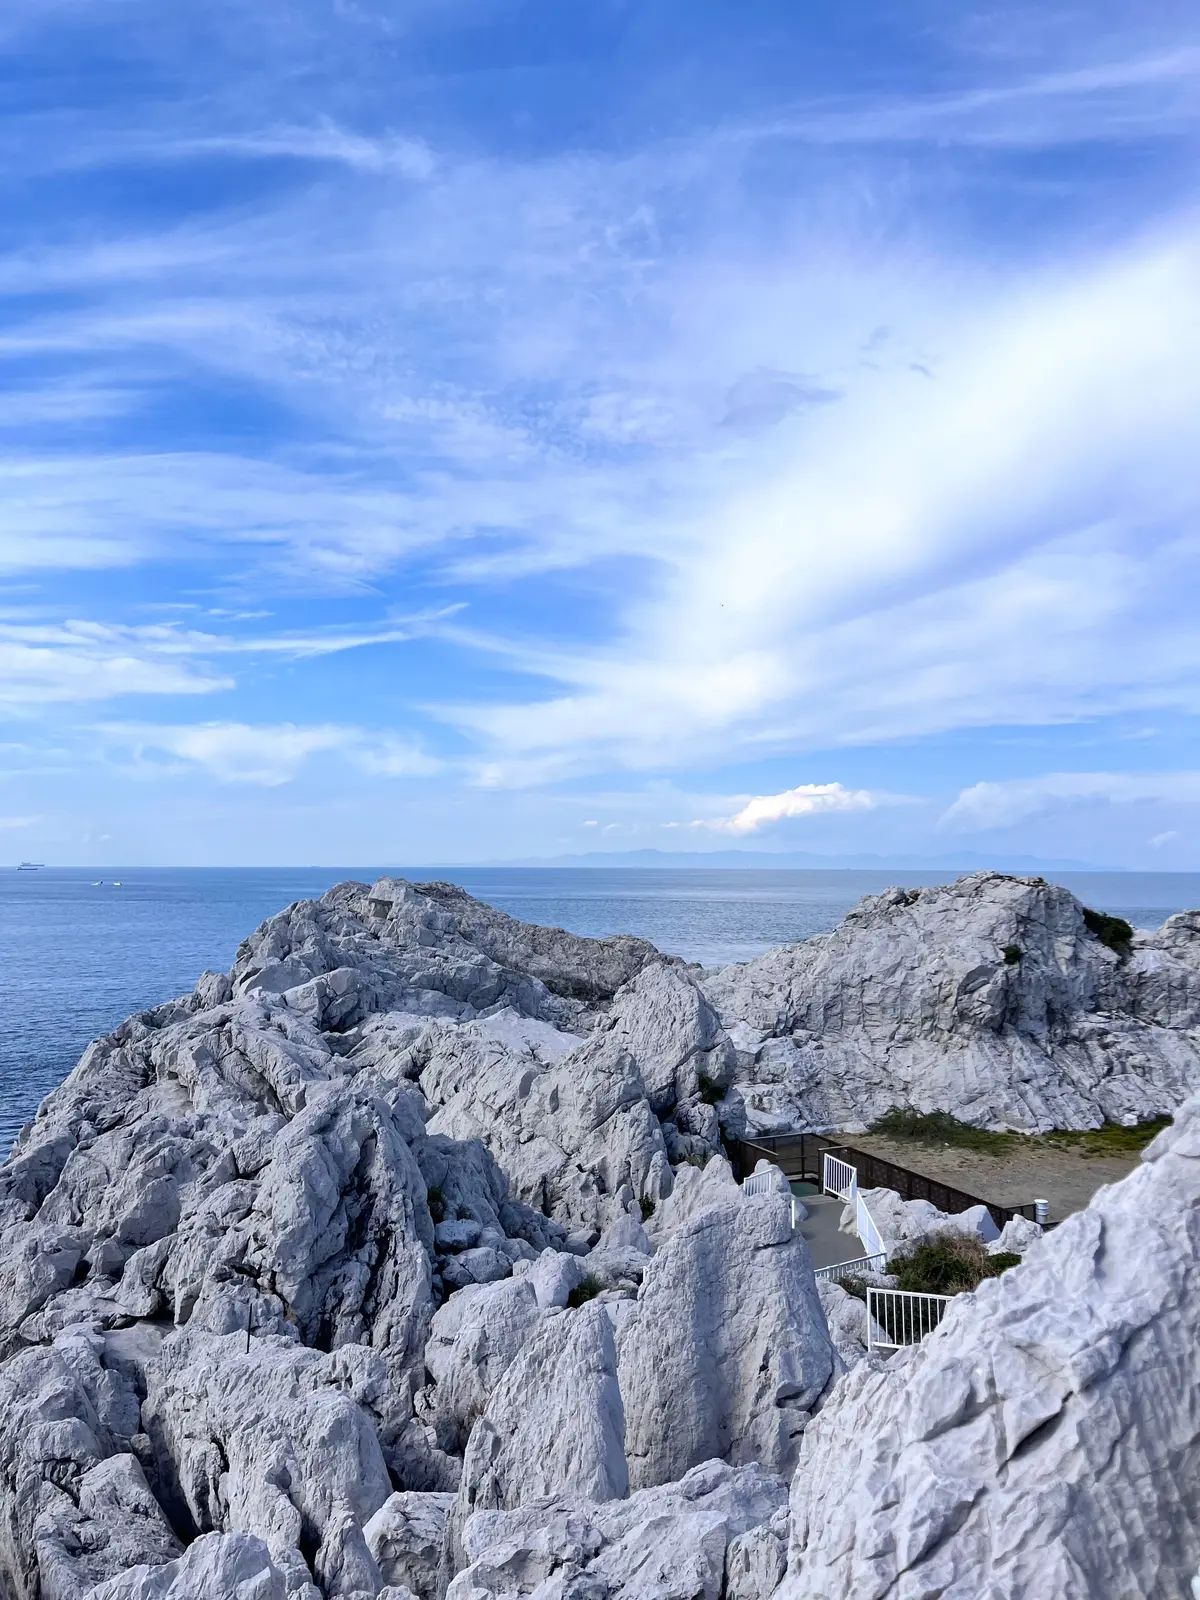 白い岩と青い海のコントラストがきれいな白崎海岸